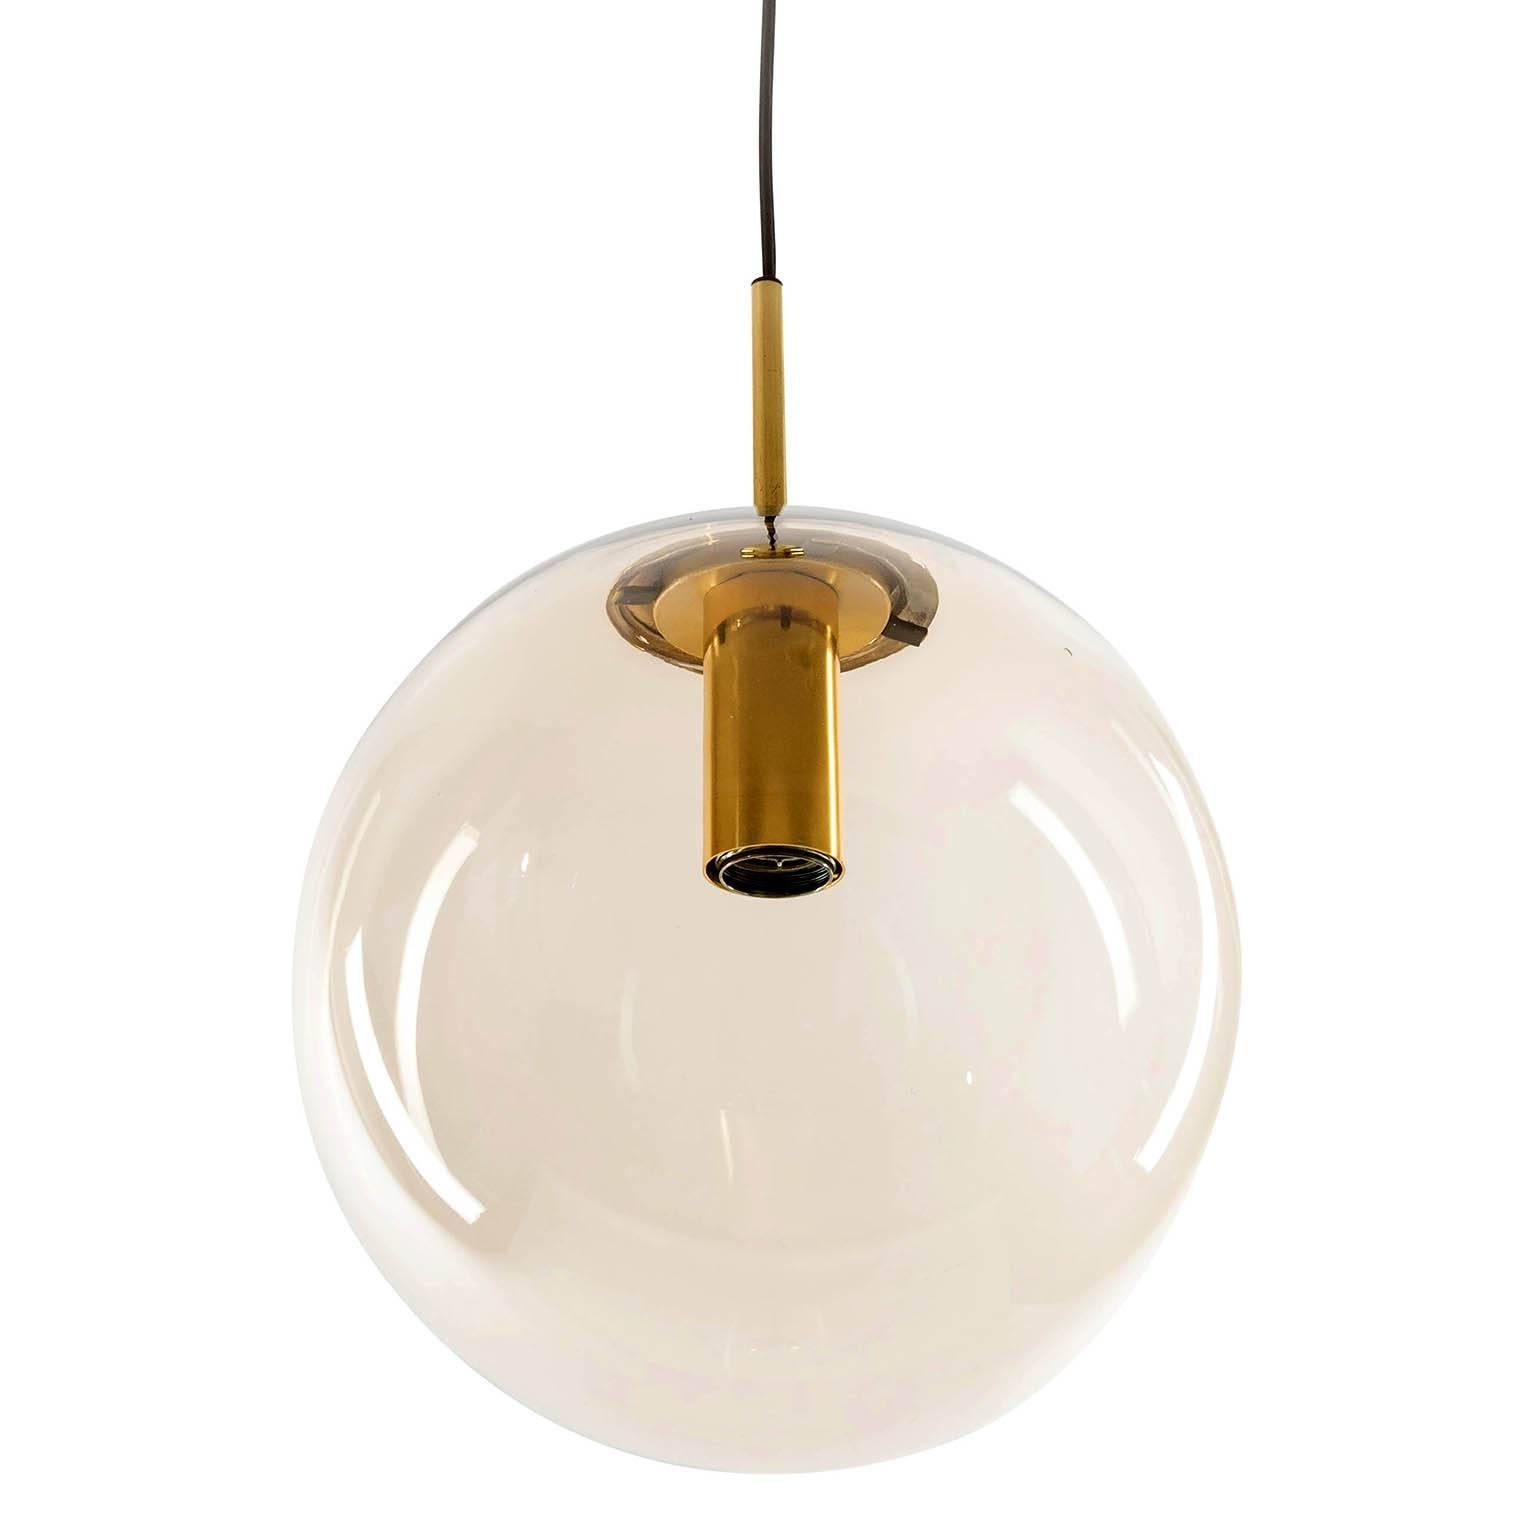 German Set of Six Limburg Globe Pendant Lights, Brass and Smoked Glass, 1970s